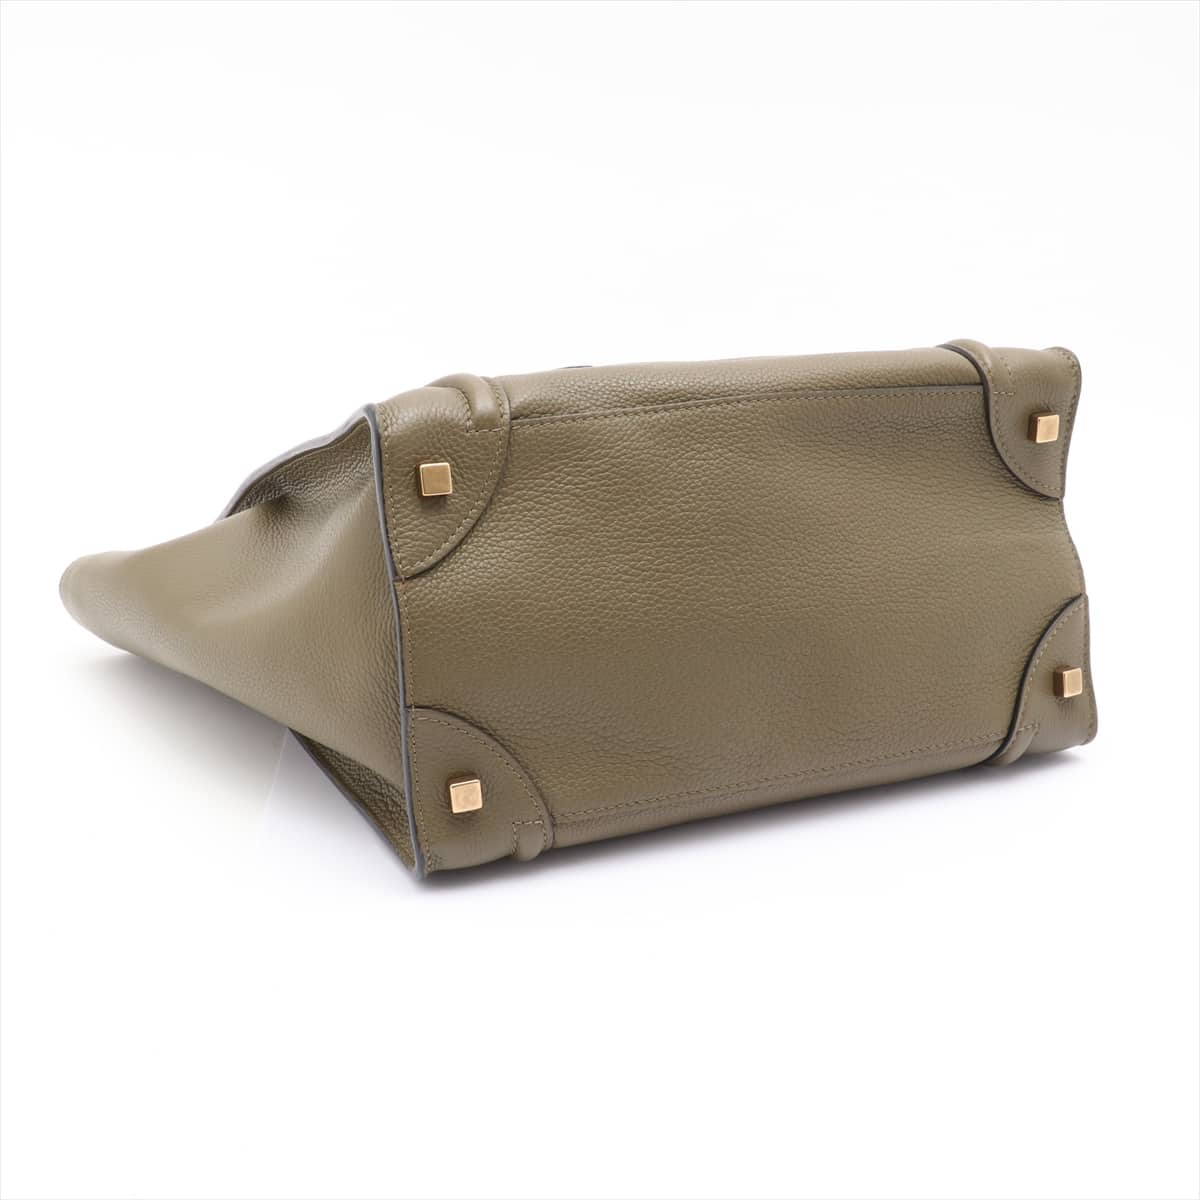 CELINE Luggage Mini shopper Leather Tote bag Khaki